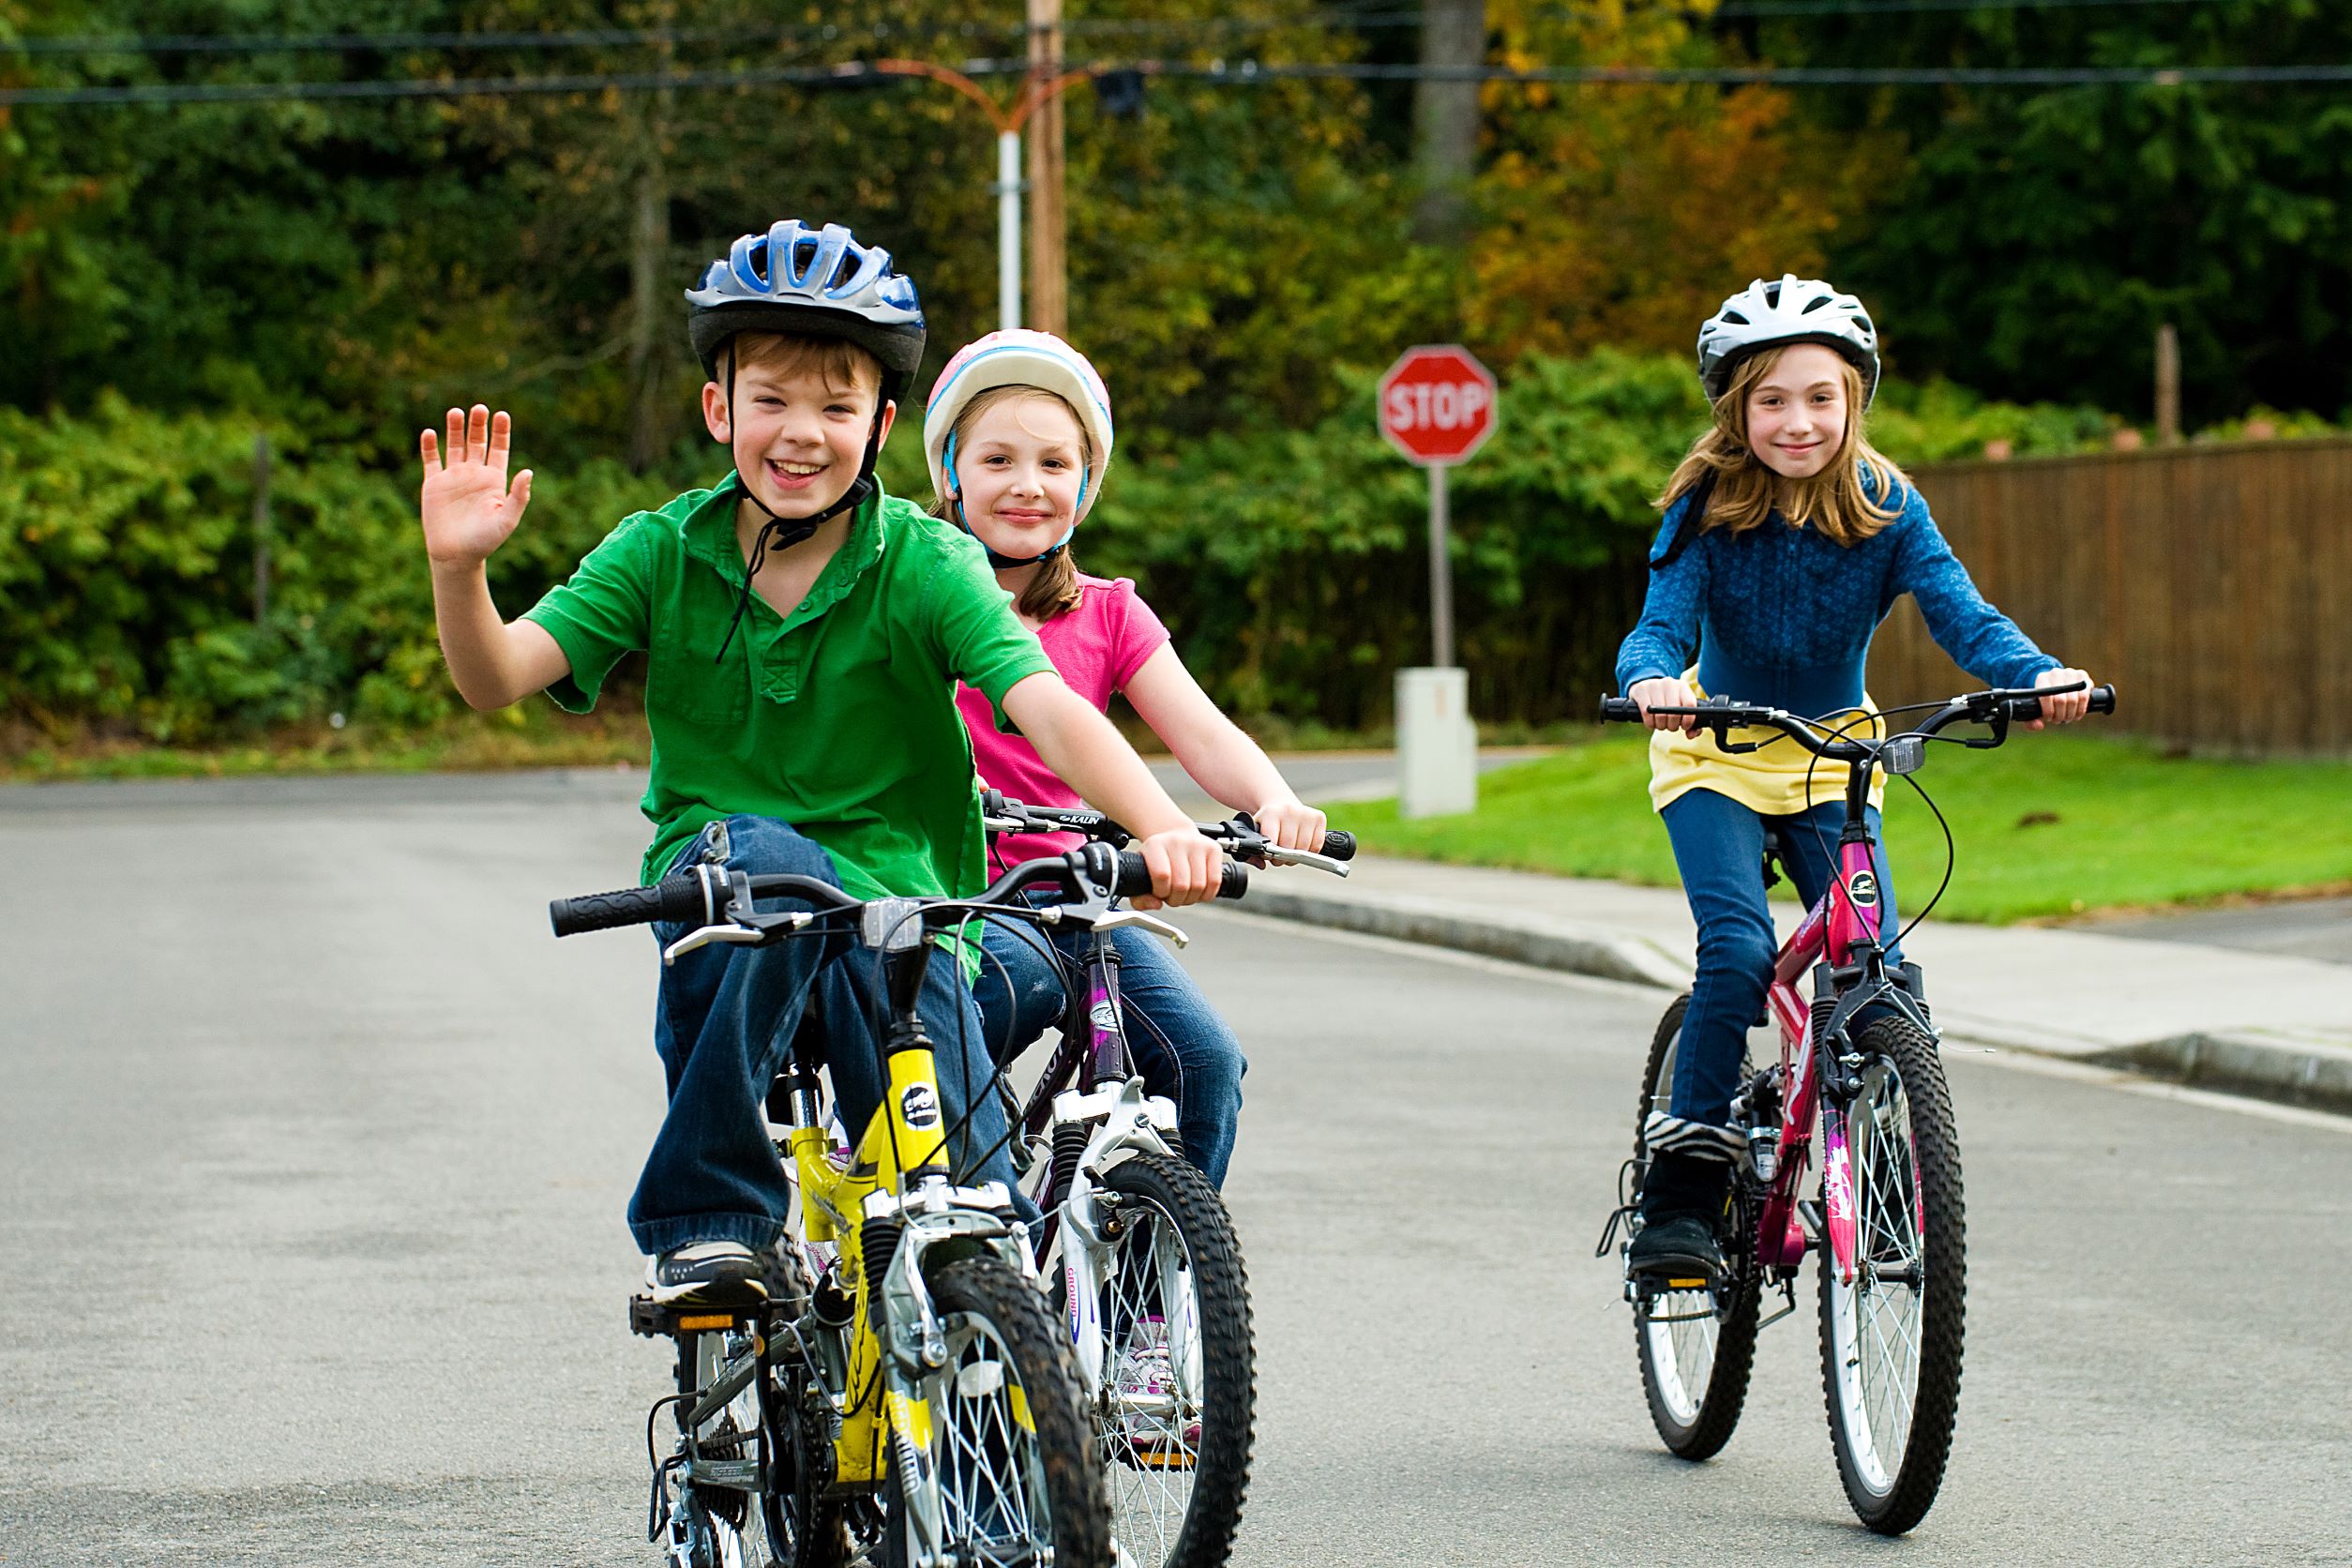 Children riding bikes outside